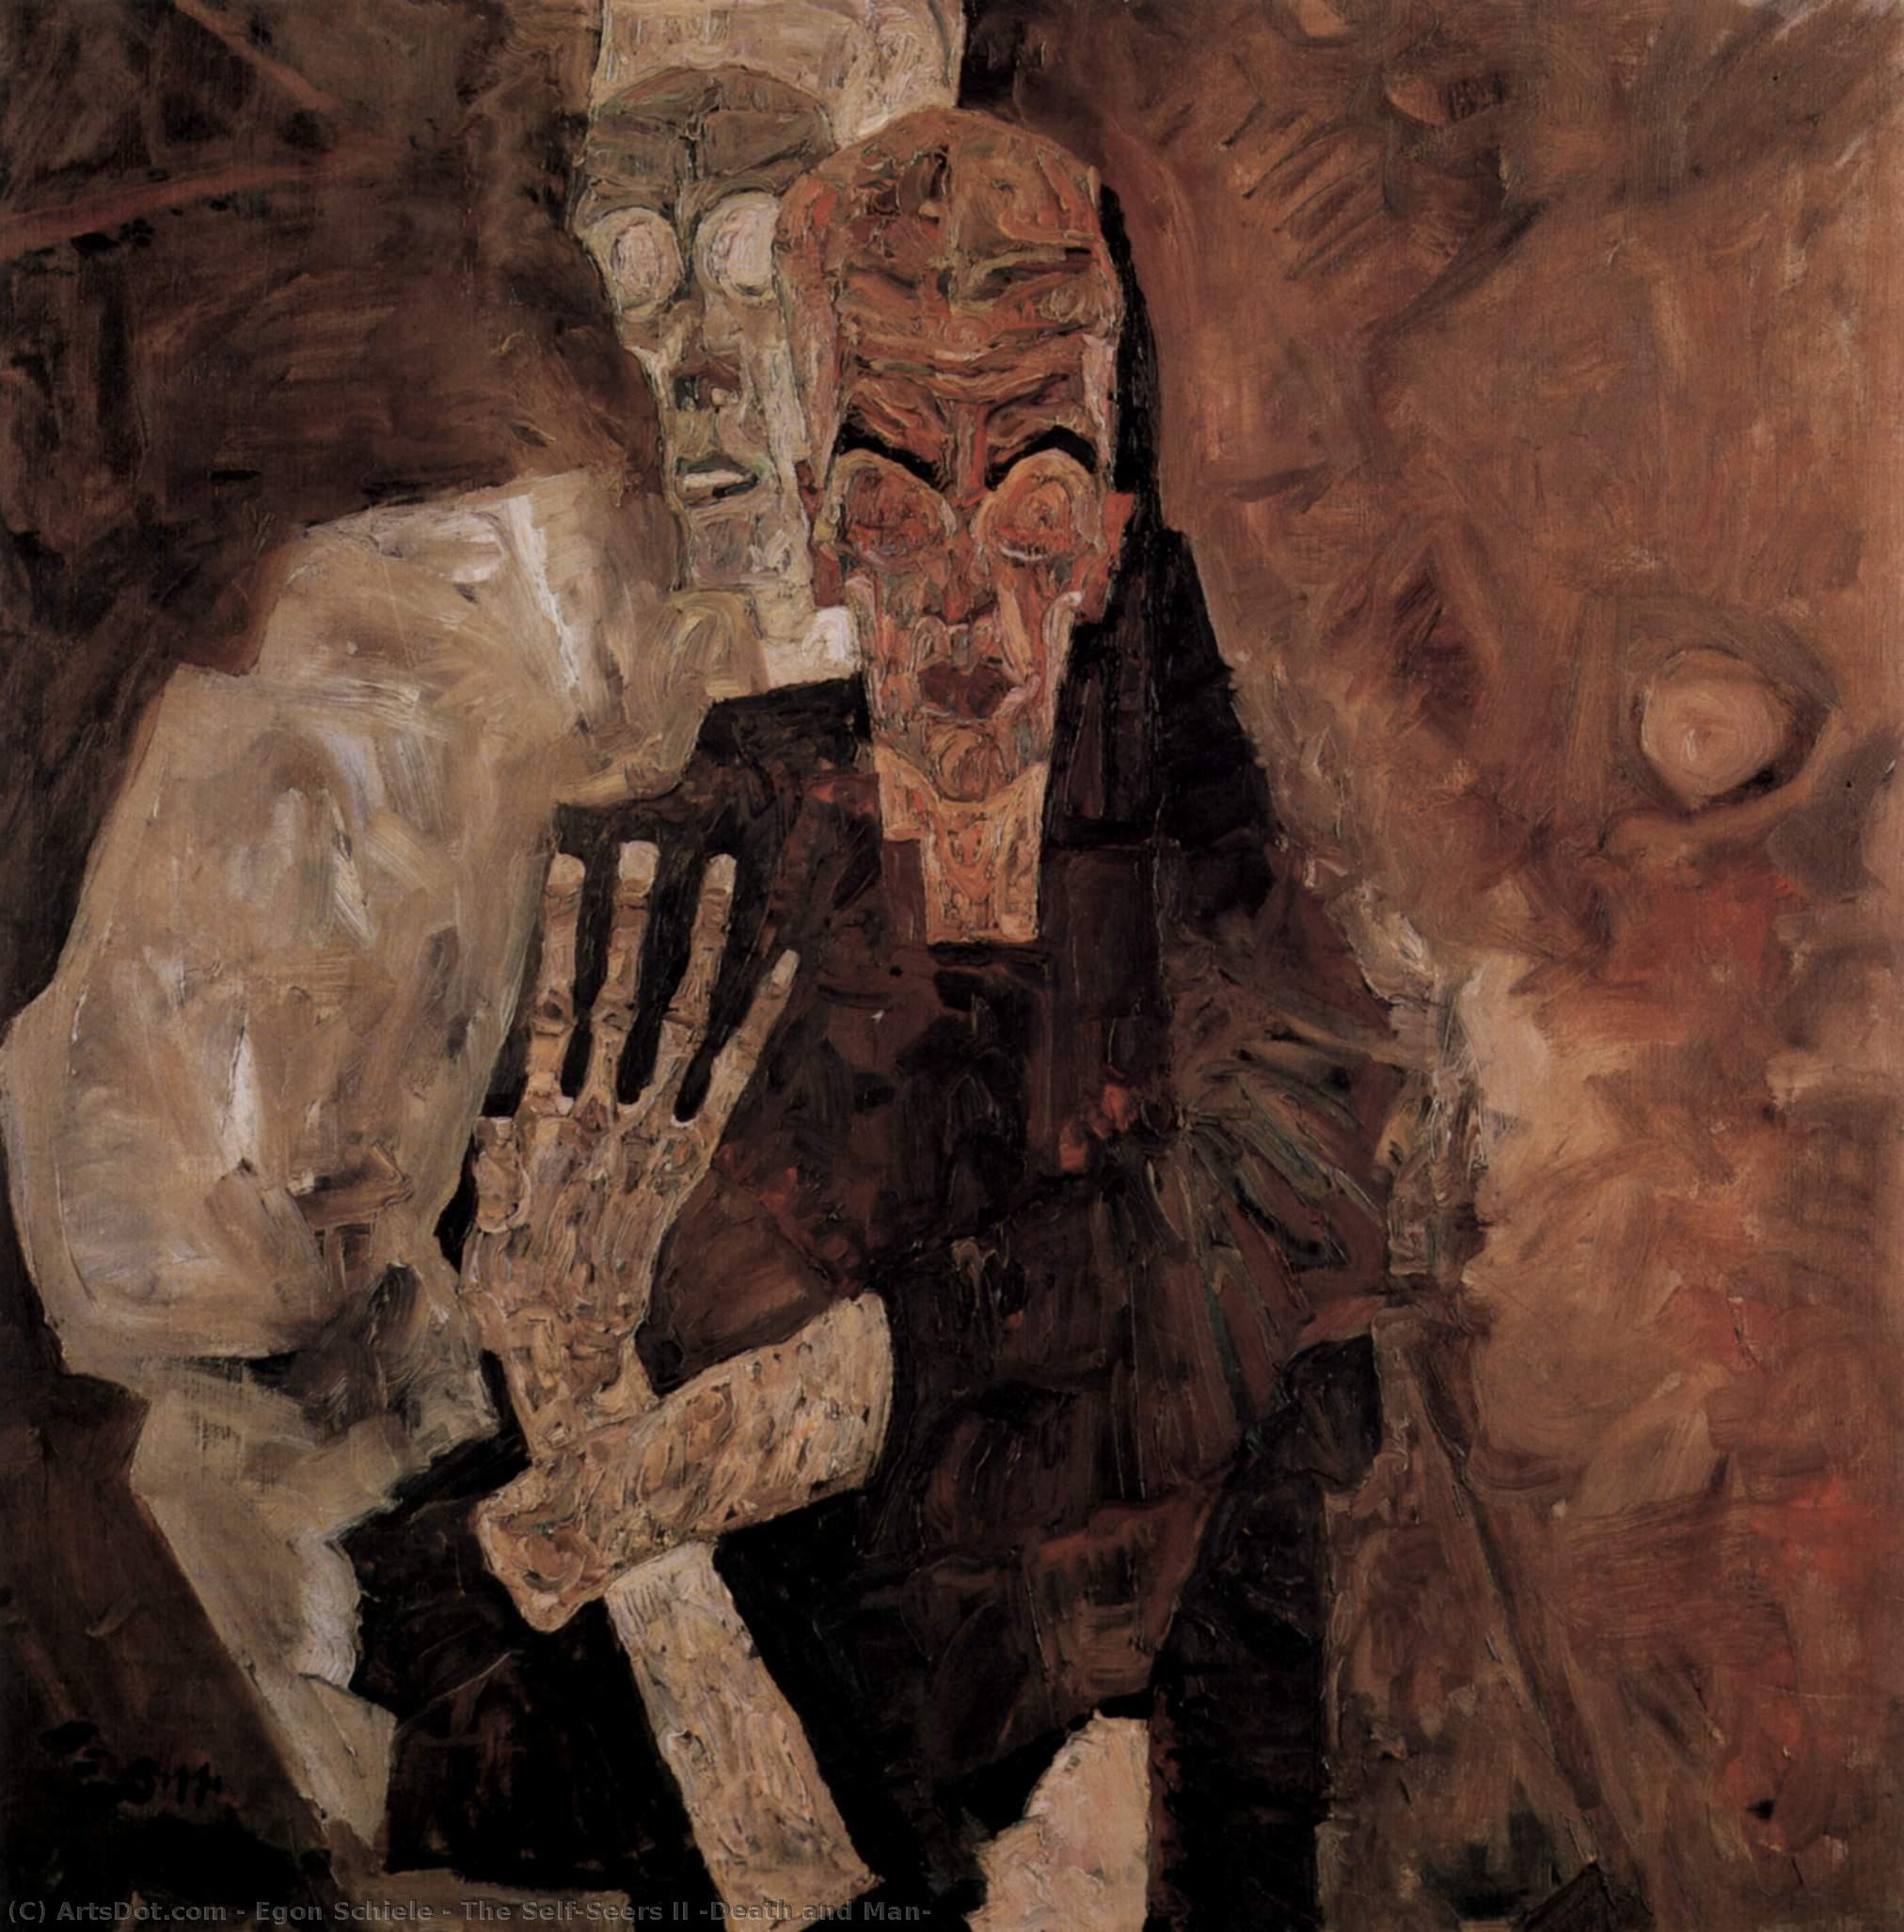 Compre Museu De Reproduções De Arte Os Self-Seers II (Morte e Homem), 1911 por Egon Schiele (1890-1918, Croatia) | ArtsDot.com